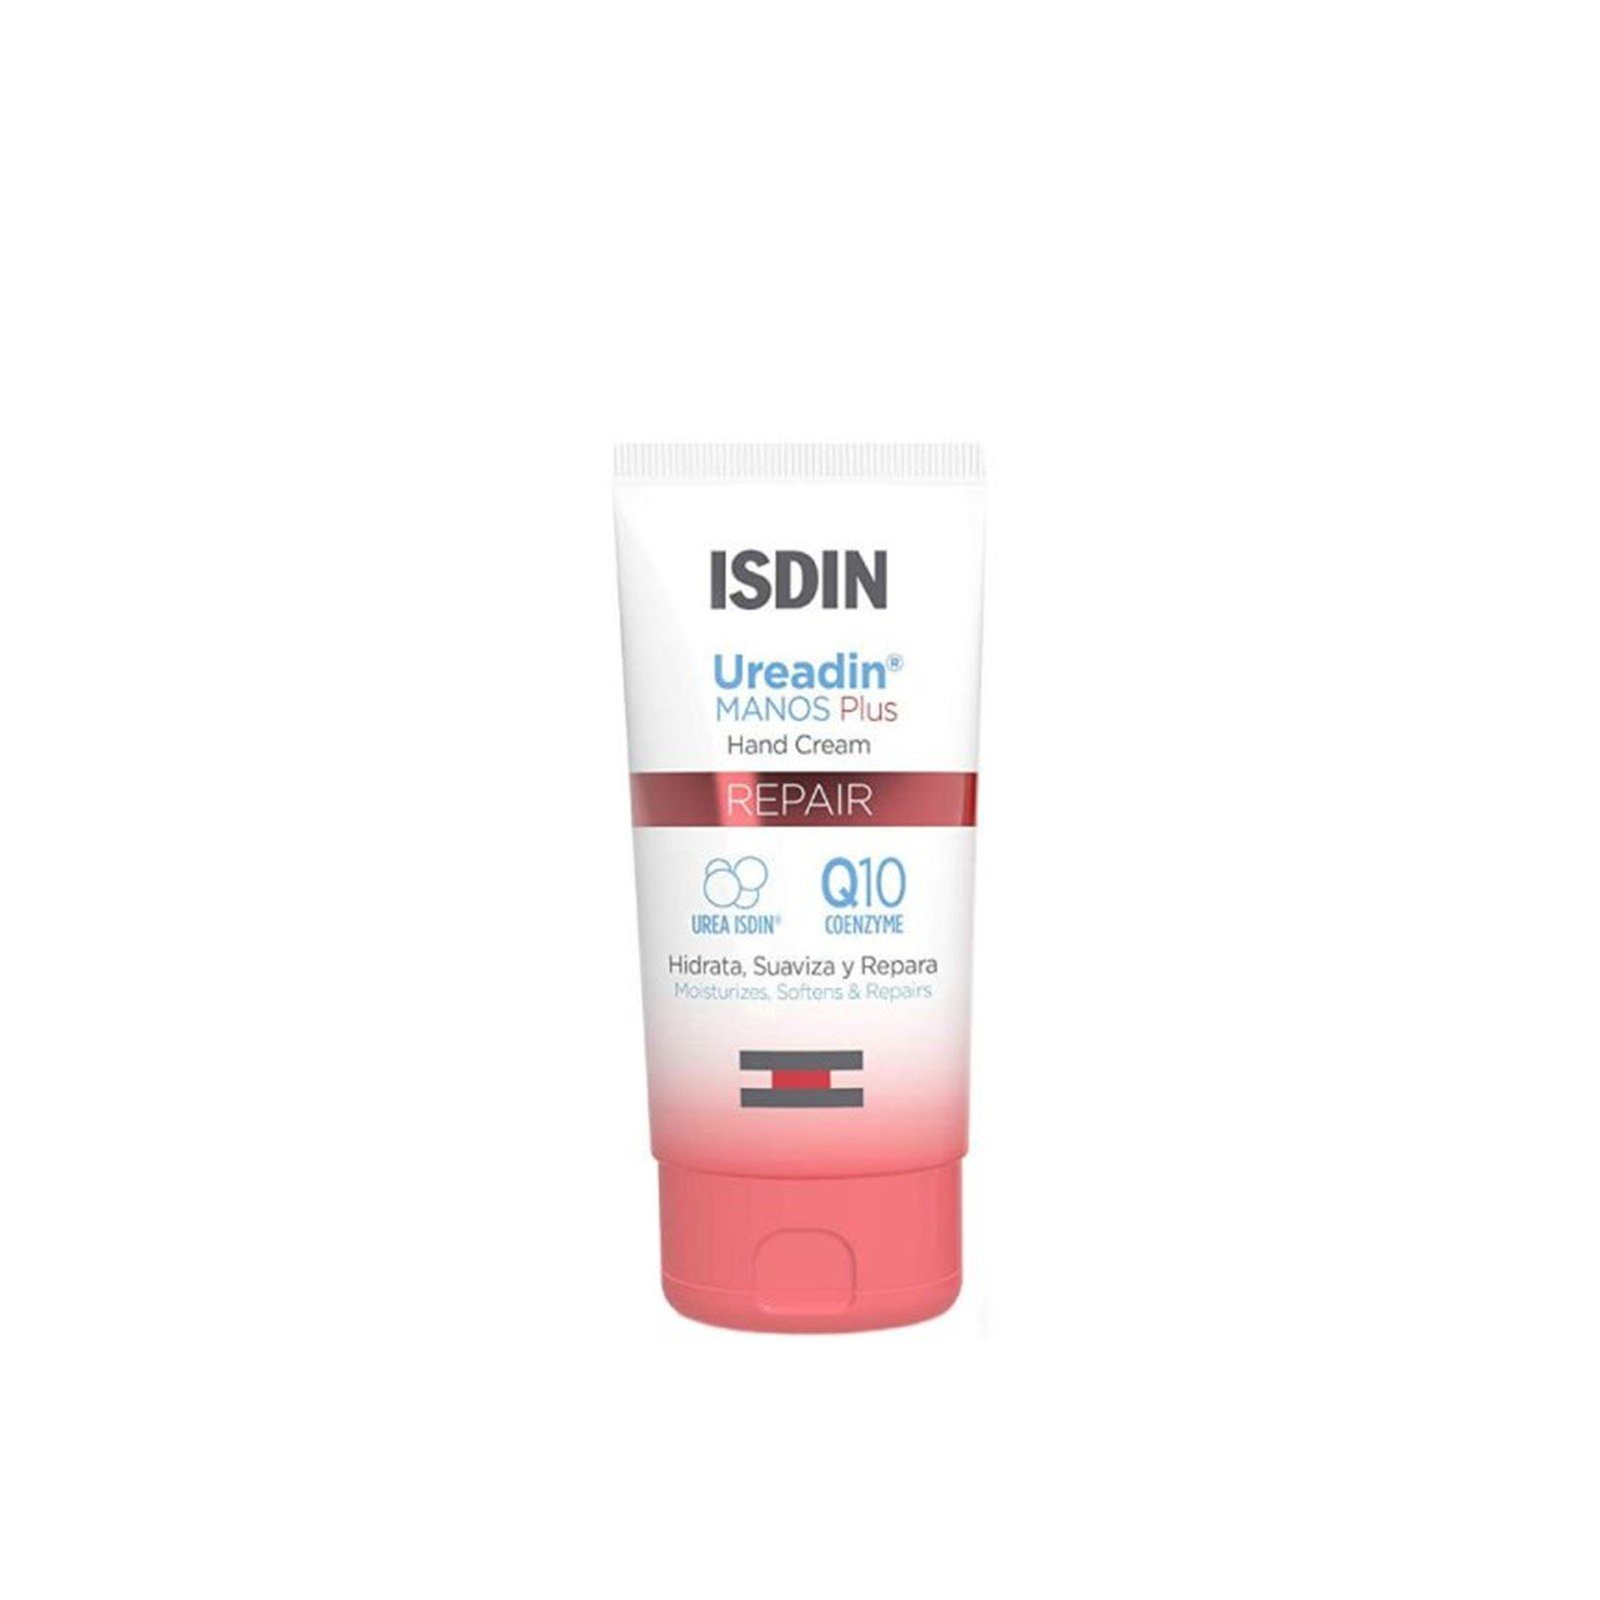 ISDIN Ureadin Manos Plus Repair Hand Cream 50ml (1.69 fl oz)